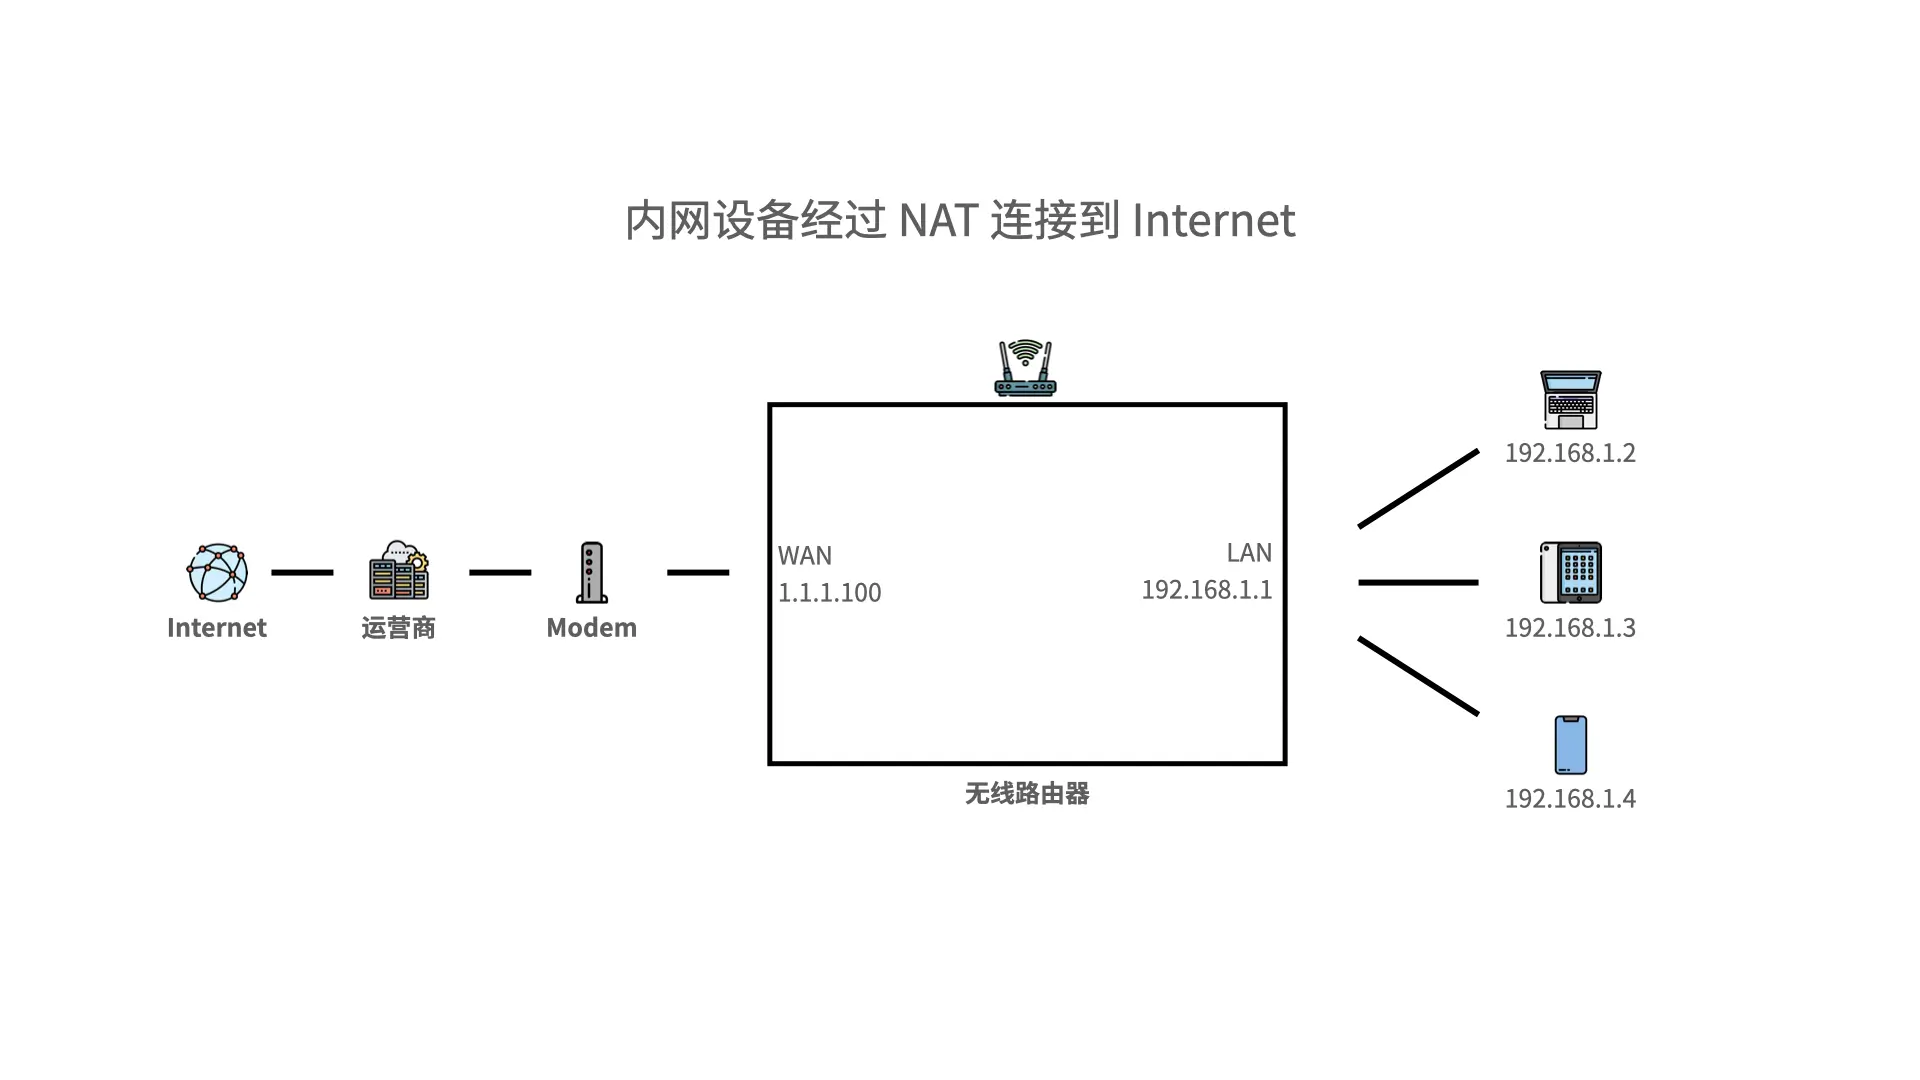 内网设备经过 NAT 连接到 Internet